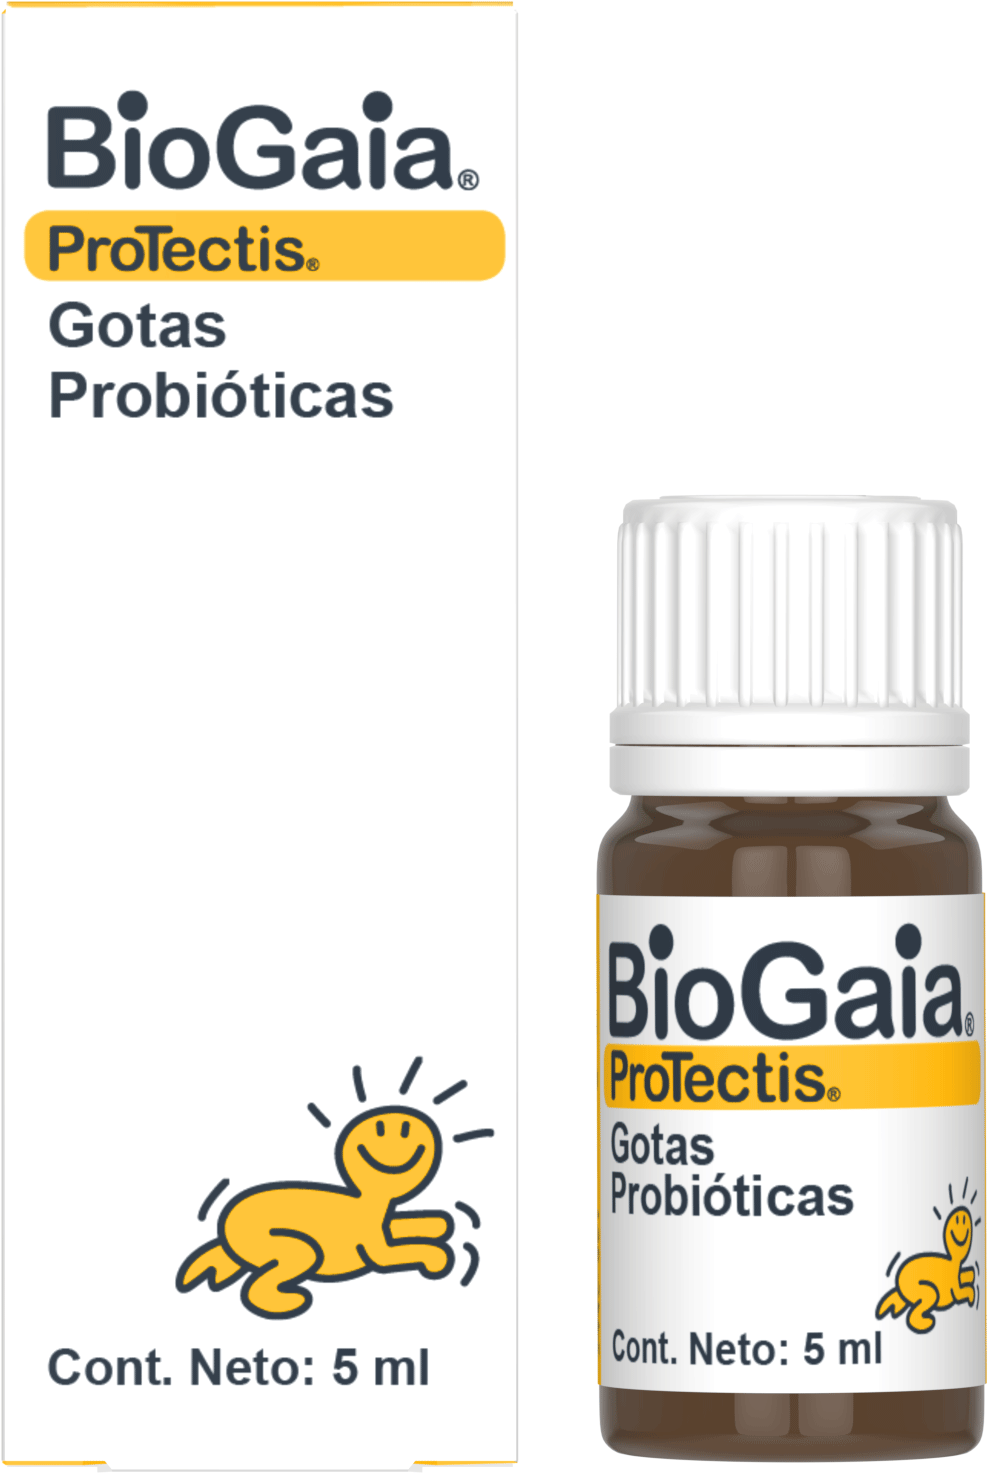 BioGaia Protectis Gotas Probioticas